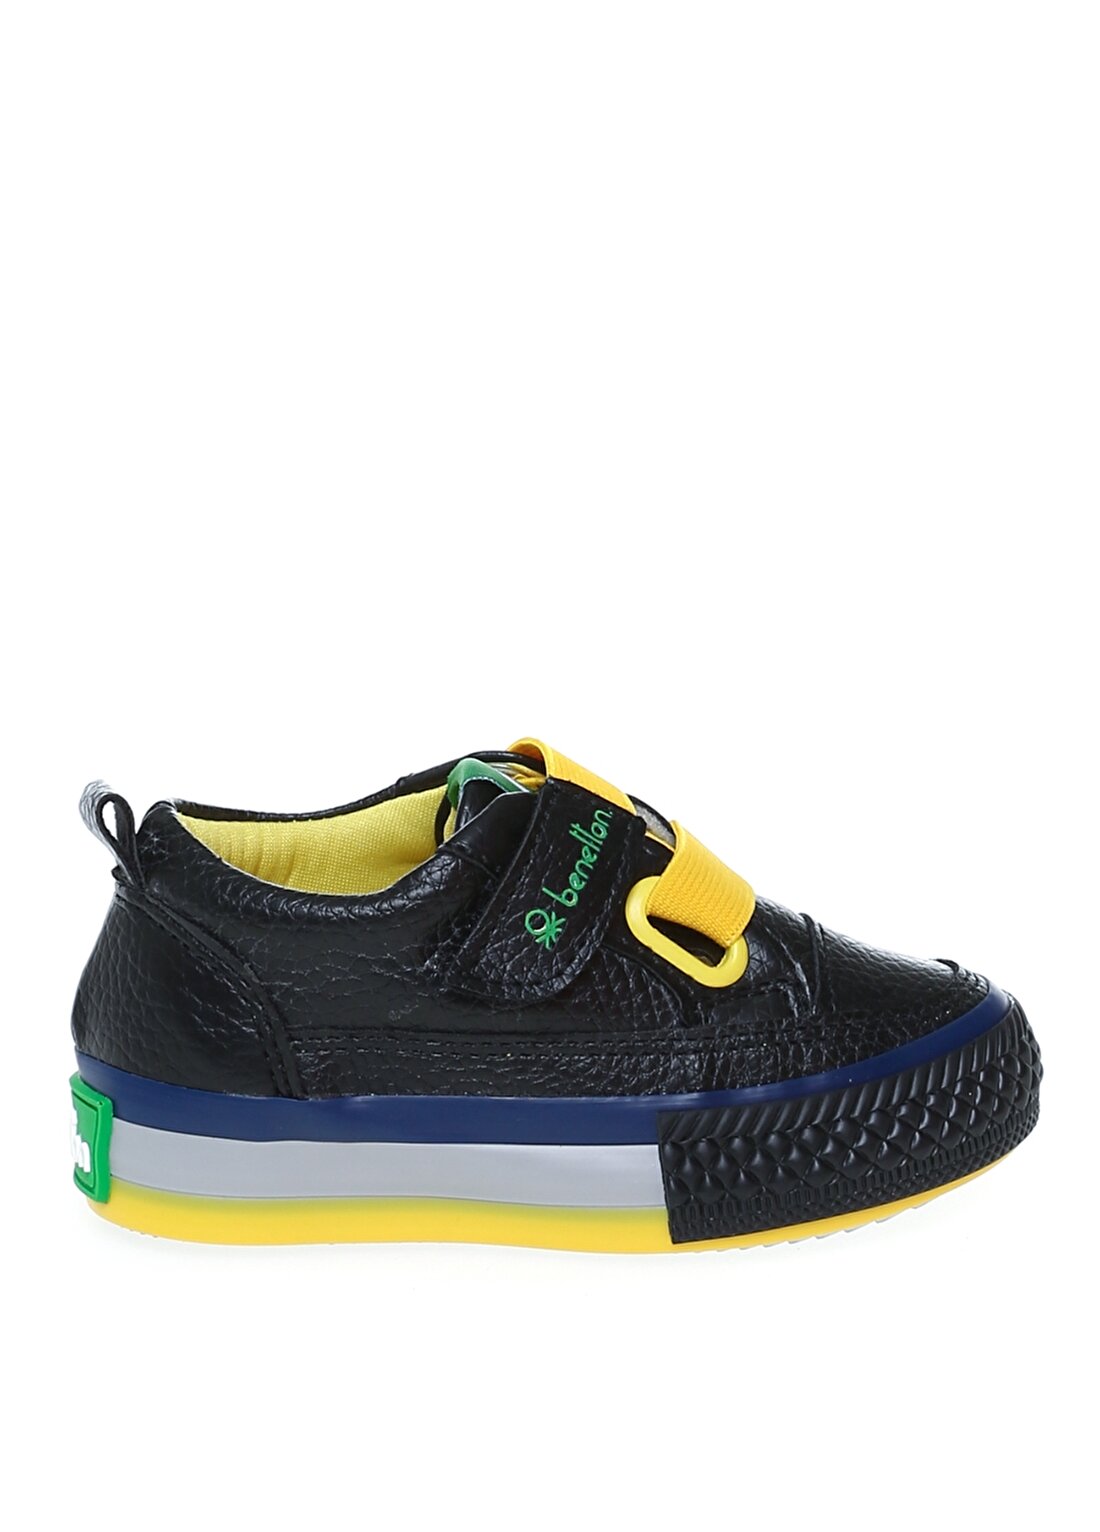 Benetton BN-30445 Siyah - Sarı Bebek Yürüyüş Ayakkabısı